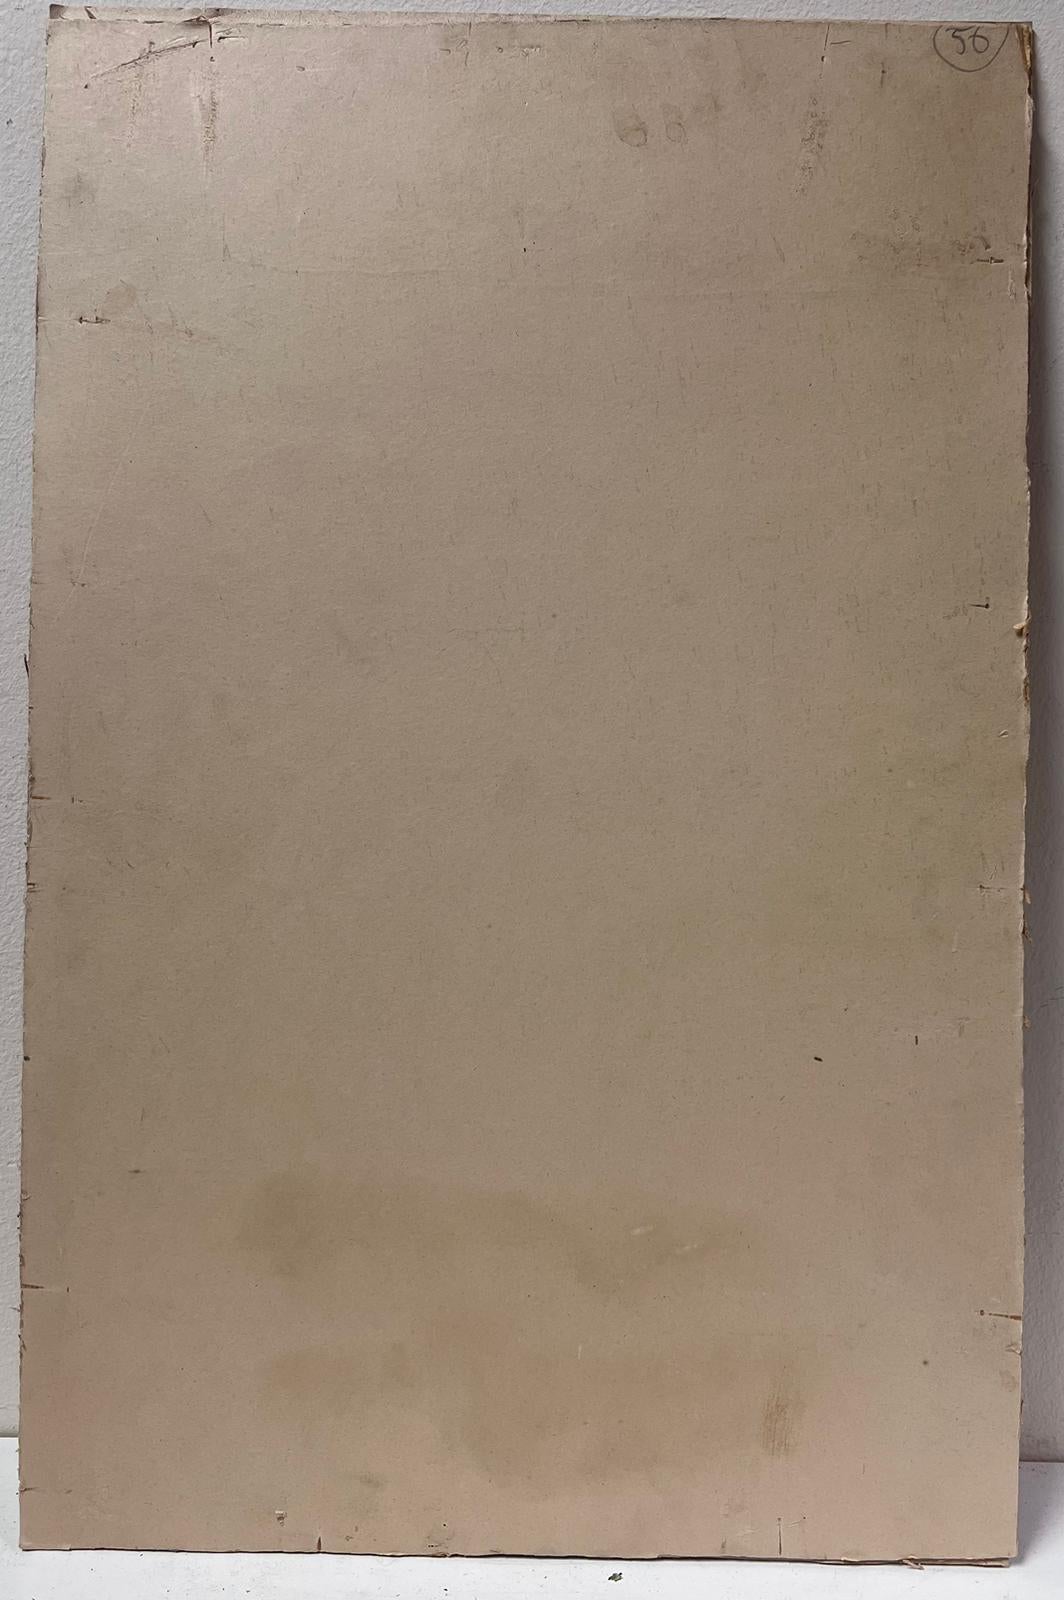 Le Lion de Saint-Marc
Vieux maître vénitien, milieu du XVIIIe siècle
cercle de Giovanni Battista Tiepolo (vénitien, 1696-1770)
dessin à l'encre et à l'aquarelle sur papier monté sur un cadre en carton, non encadré
cadre de la carte : 20.75 x 13